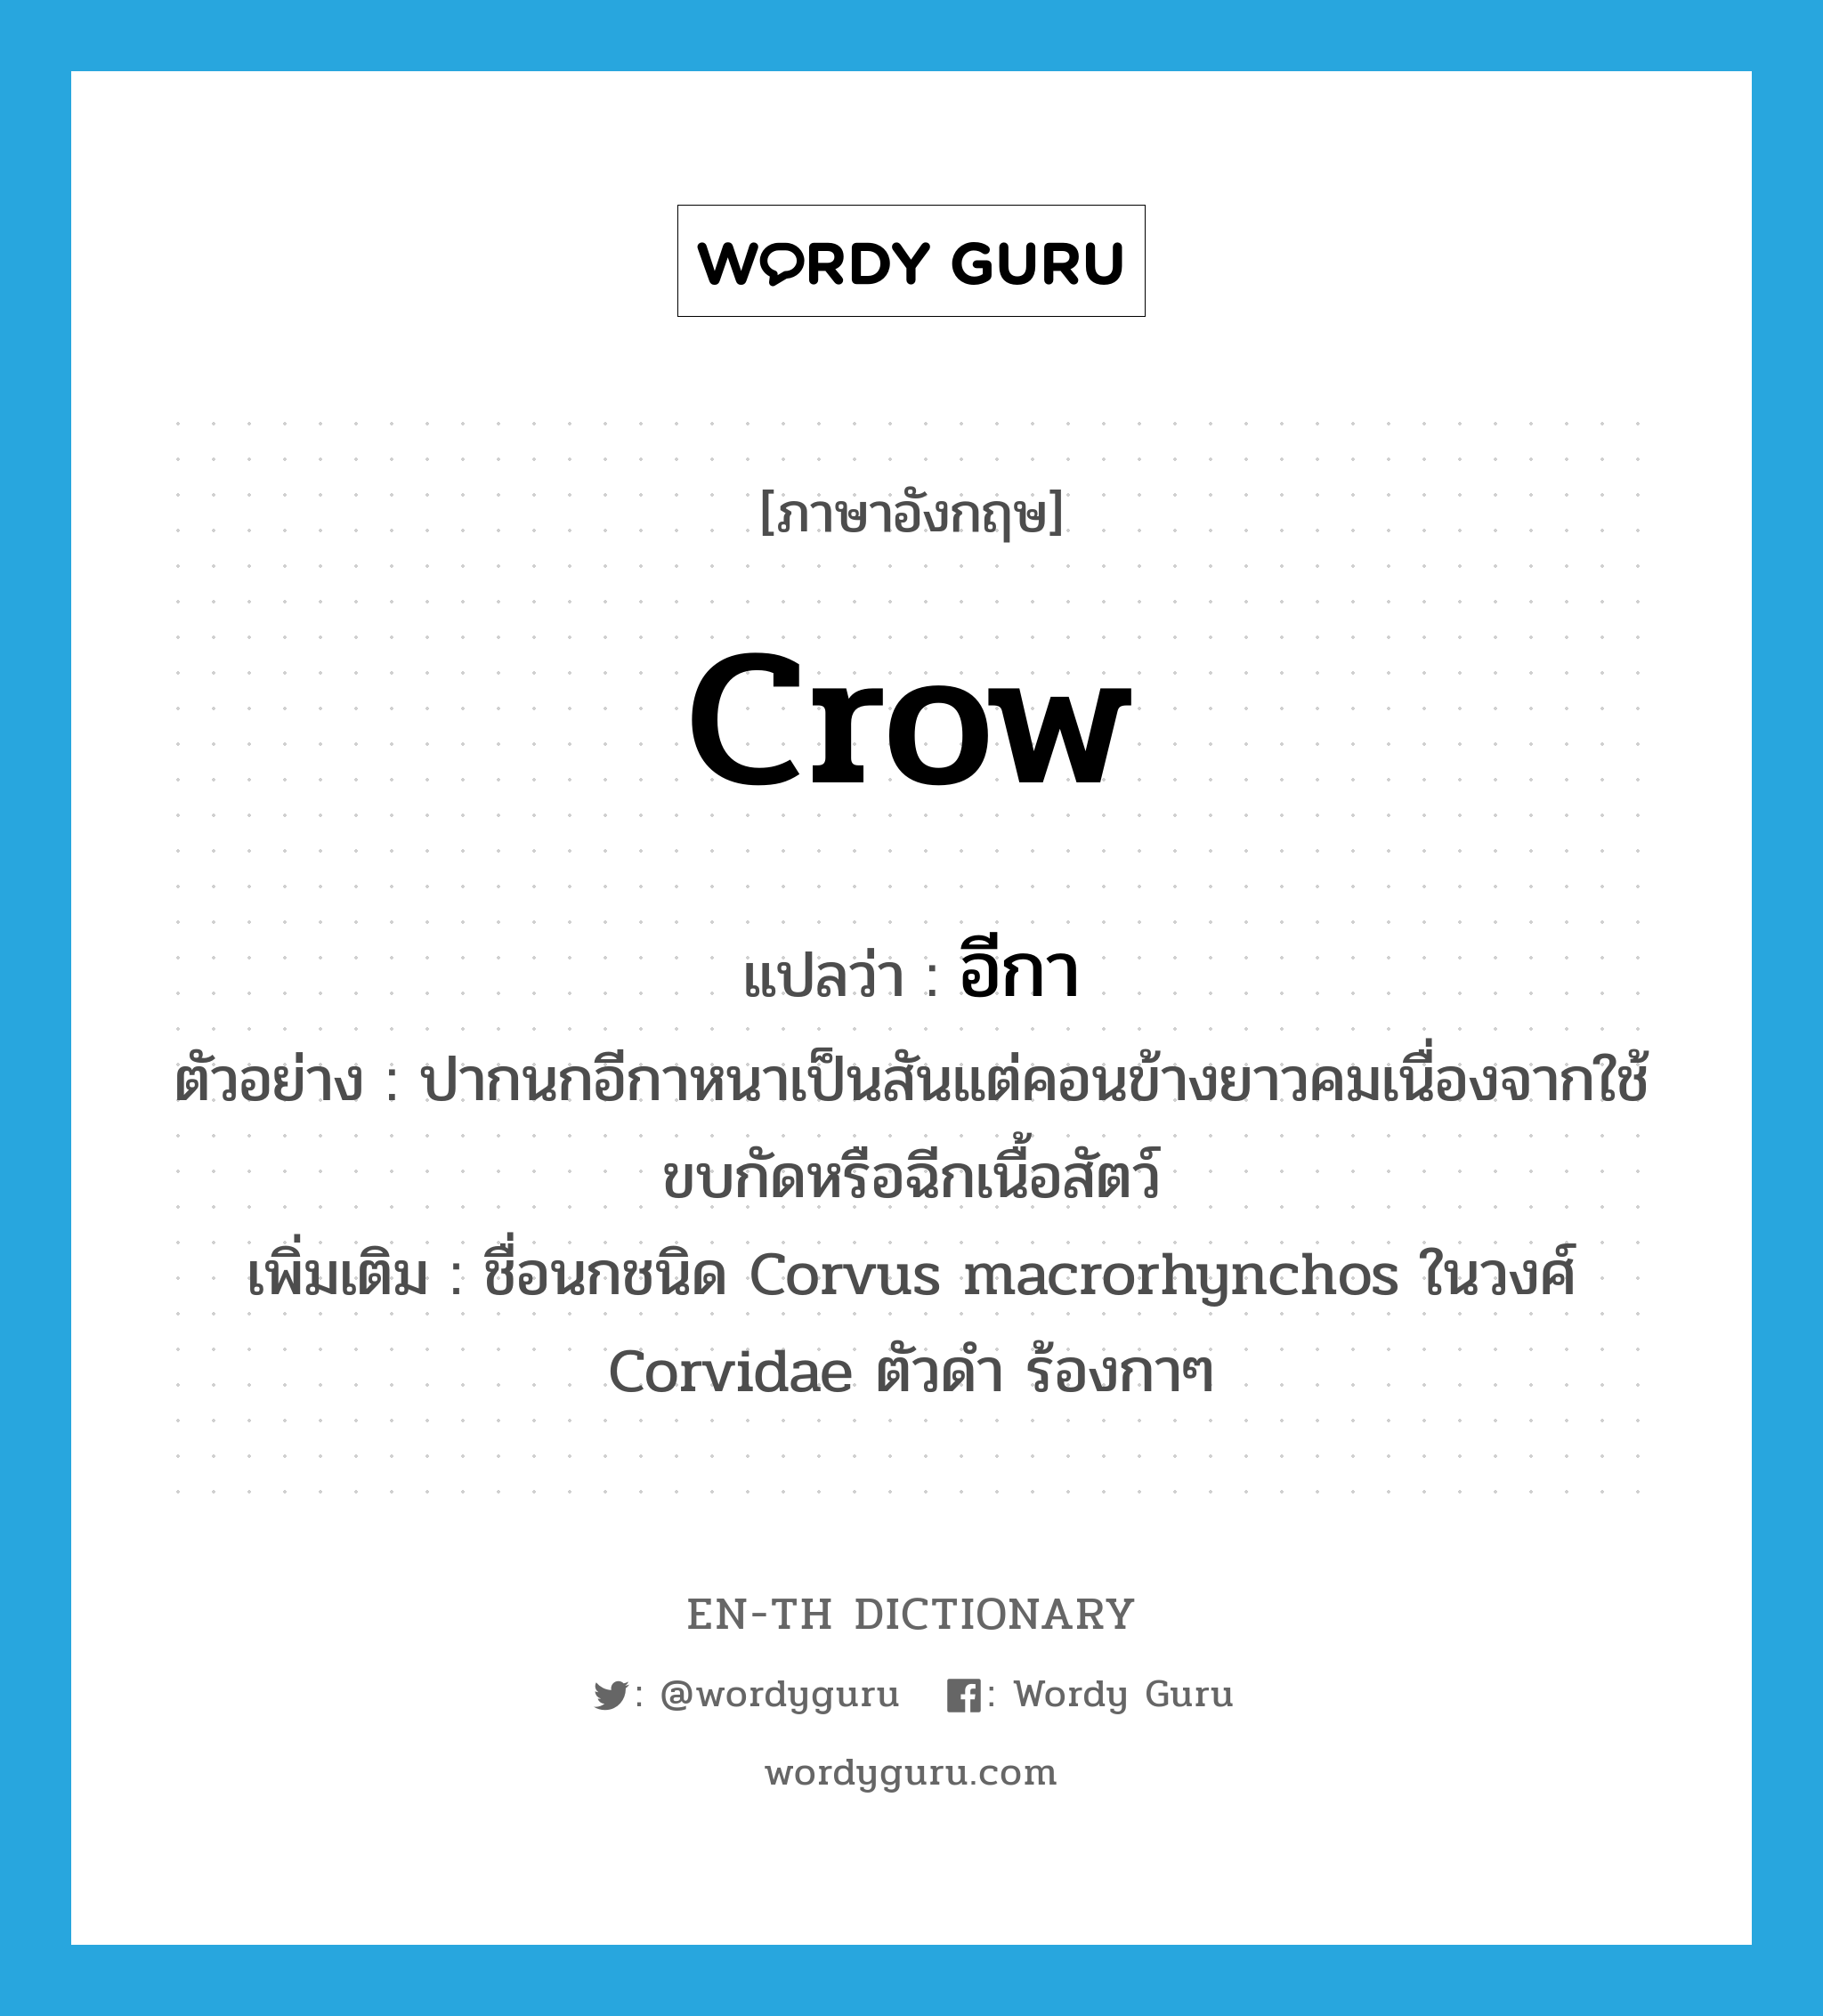 crow แปลว่า?, คำศัพท์ภาษาอังกฤษ crow แปลว่า อีกา ประเภท N ตัวอย่าง ปากนกอีกาหนาเป็นสันแต่คอนข้างยาวคมเนื่องจากใช้ขบกัดหรือฉีกเนื้อสัตว์ เพิ่มเติม ชื่อนกชนิด Corvus macrorhynchos ในวงศ์ Corvidae ตัวดำ ร้องกาๆ หมวด N